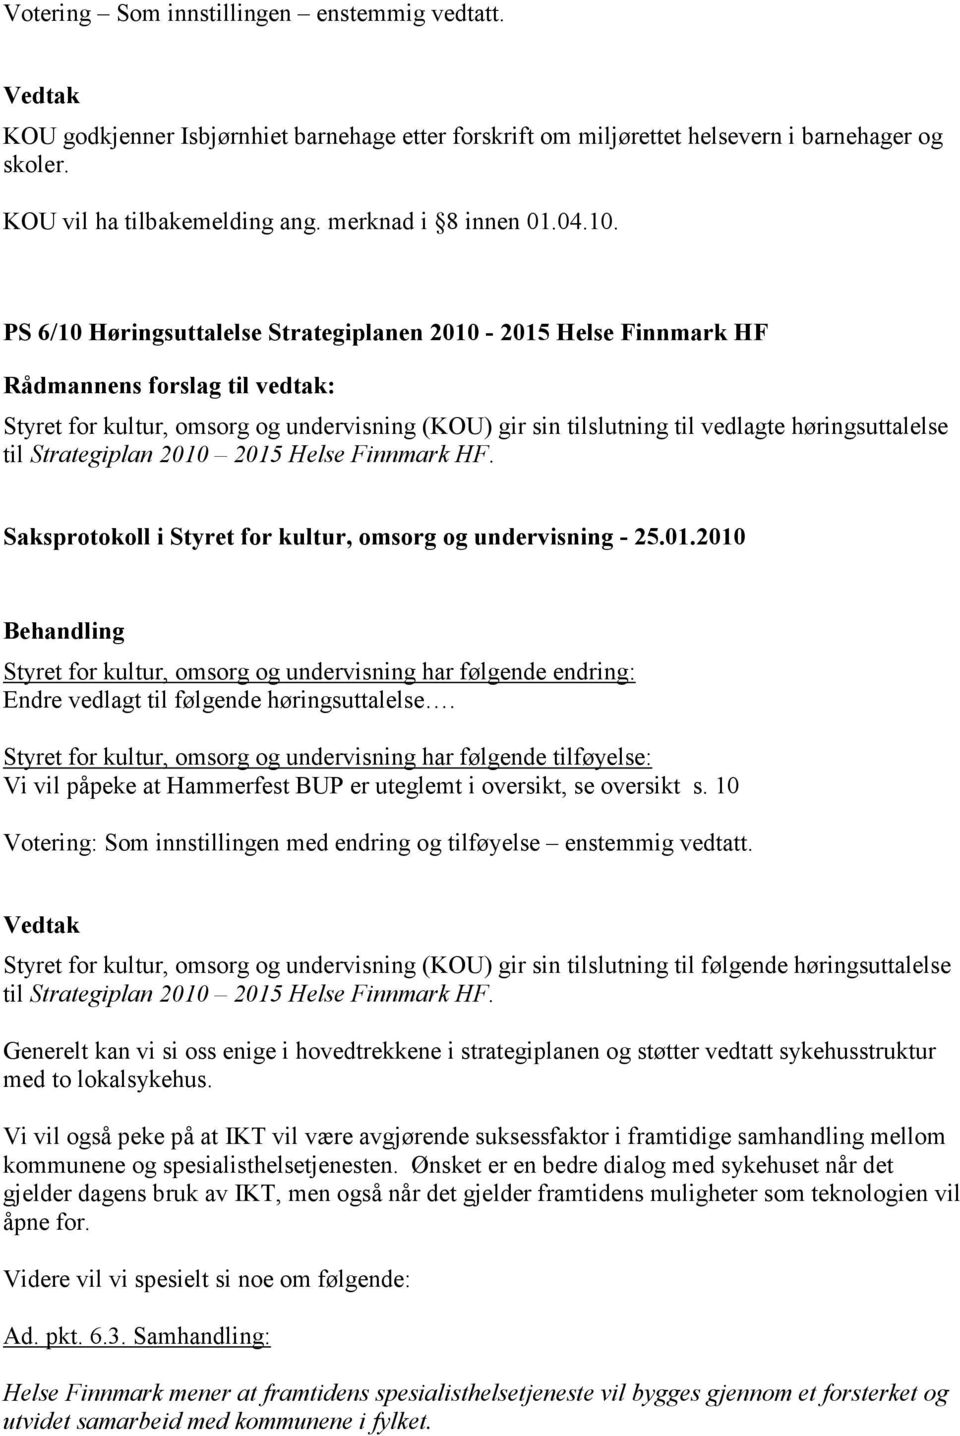 PS 6/10 Høringsuttalelse Strategiplanen 2010-2015 Helse Finnmark HF Styret for kultur, omsorg og undervisning (KOU) gir sin tilslutning til vedlagte høringsuttalelse til Strategiplan 2010 2015 Helse